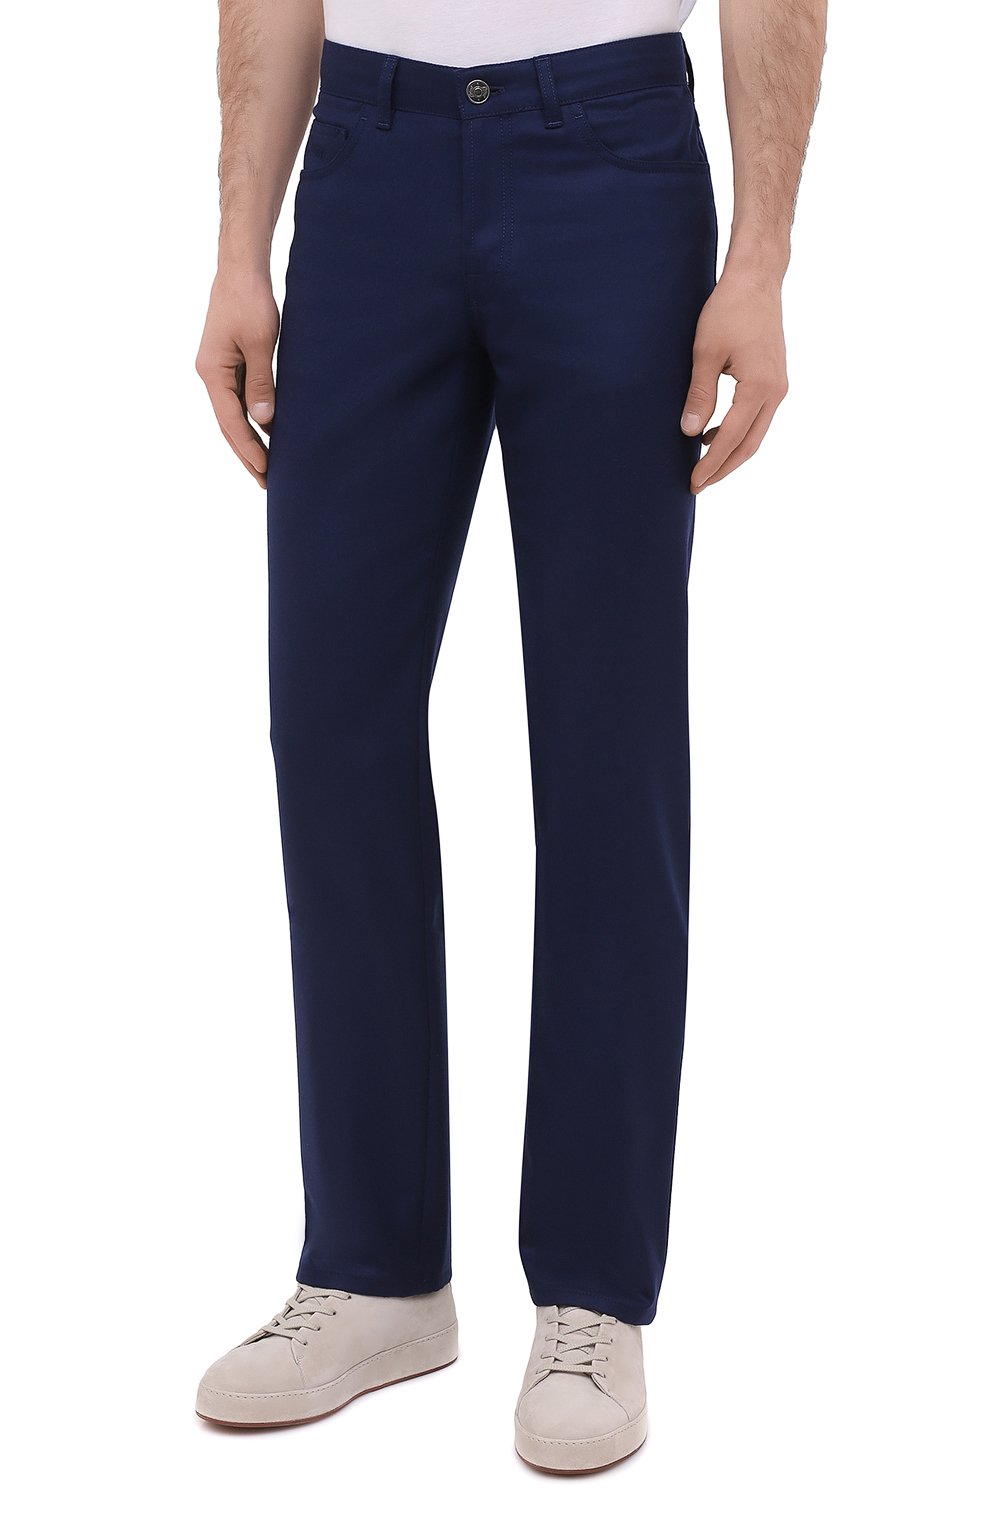 Мужские синие шерстяные брюки BRIONI купить в интернет-магазине ЦУМ, арт.SPNK0L/09AK9/STELVI0